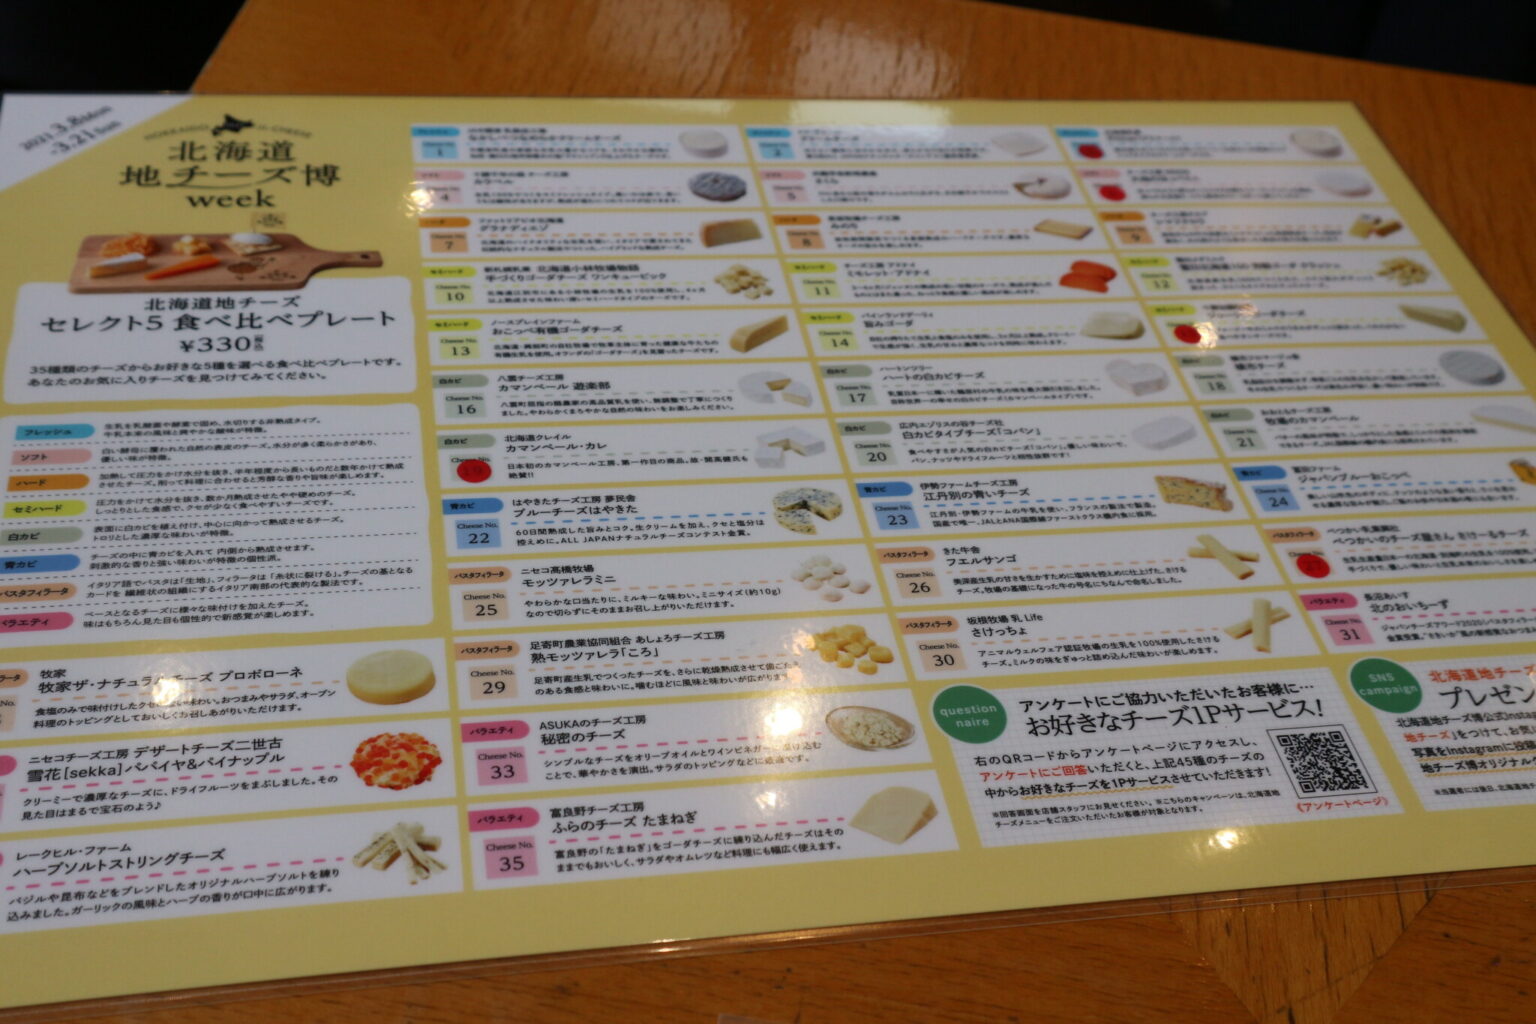 テーブルには、35種類のチーズが載った一覧表がありました。